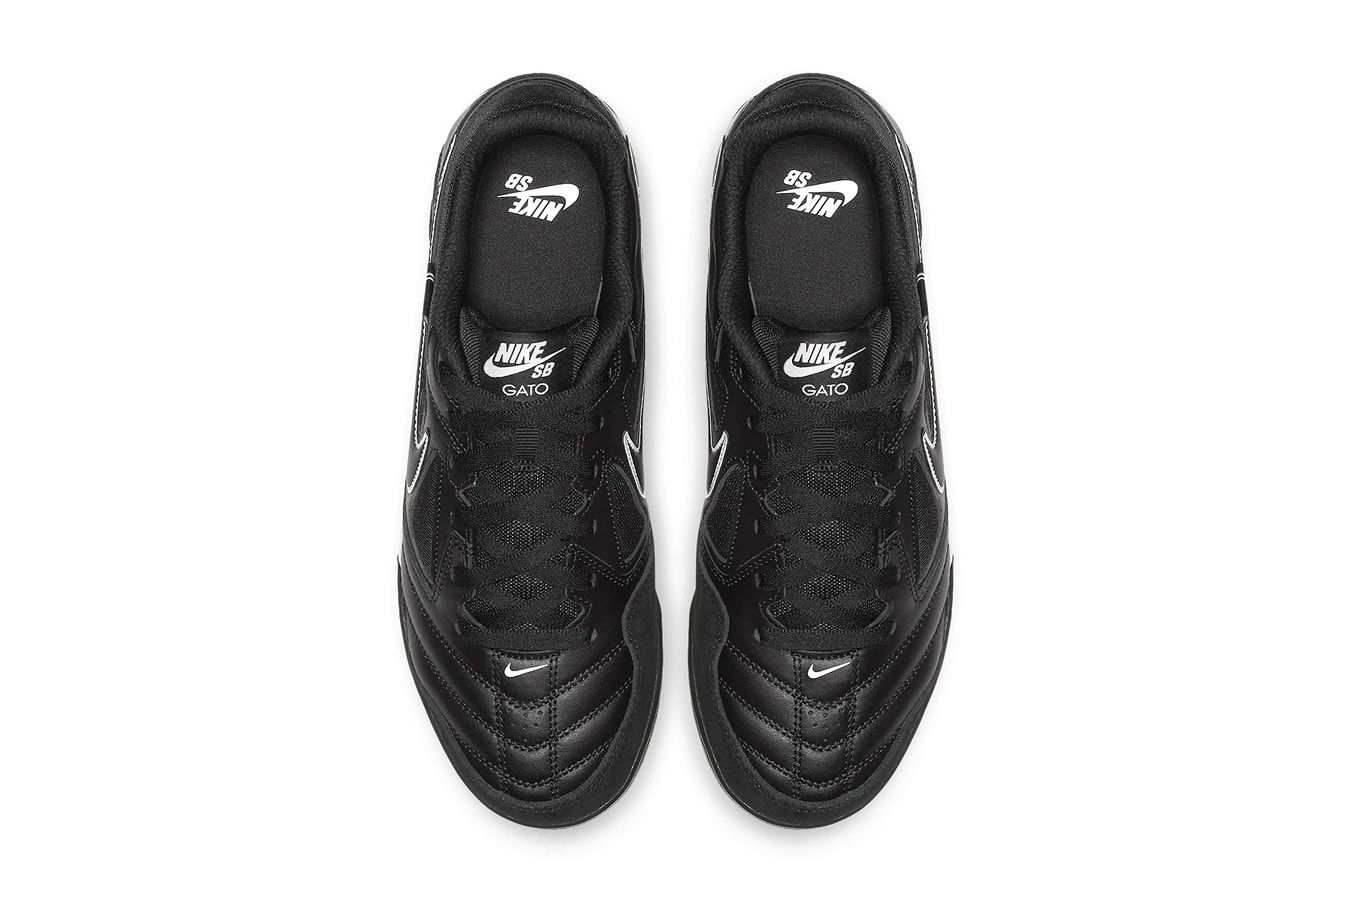 ナイキ Nike SB スケートボード Gato ガトー ブラック ホワイト ゴールド スニーカー インライン オリジナル Black White 